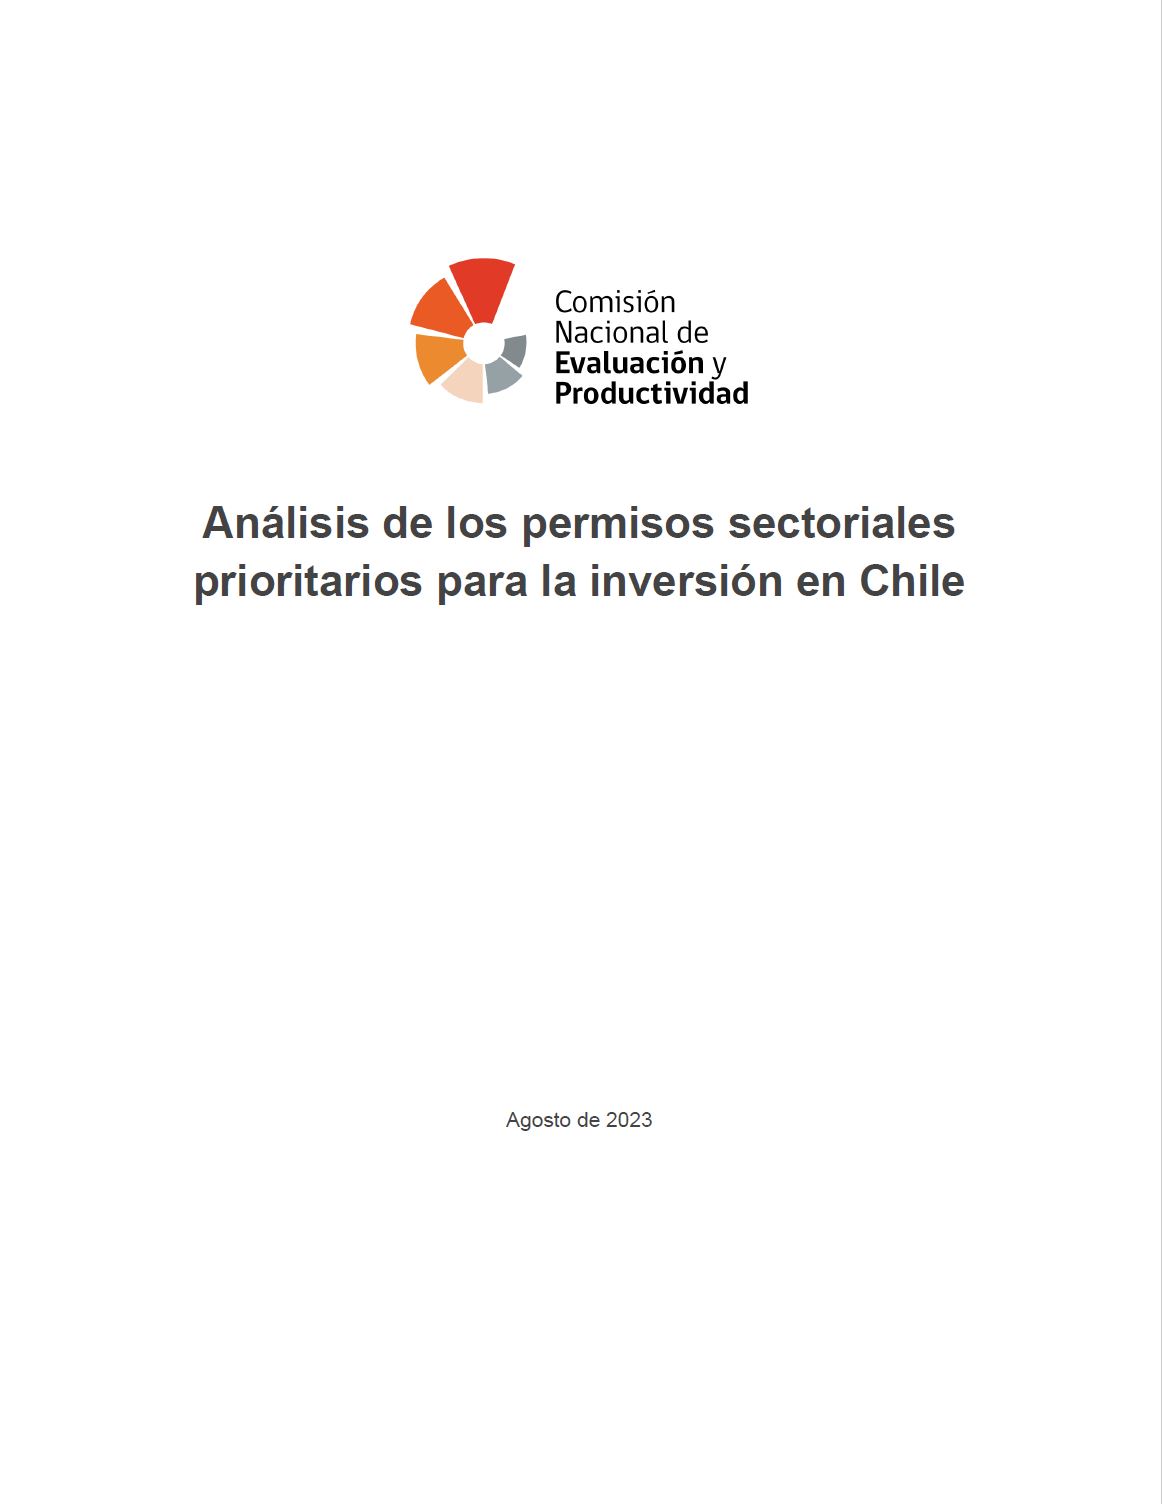 Acceso directo a los nmeros publicados en la revista Anlisis de los permisos sectoriales prioritarios para la inversin en Chile